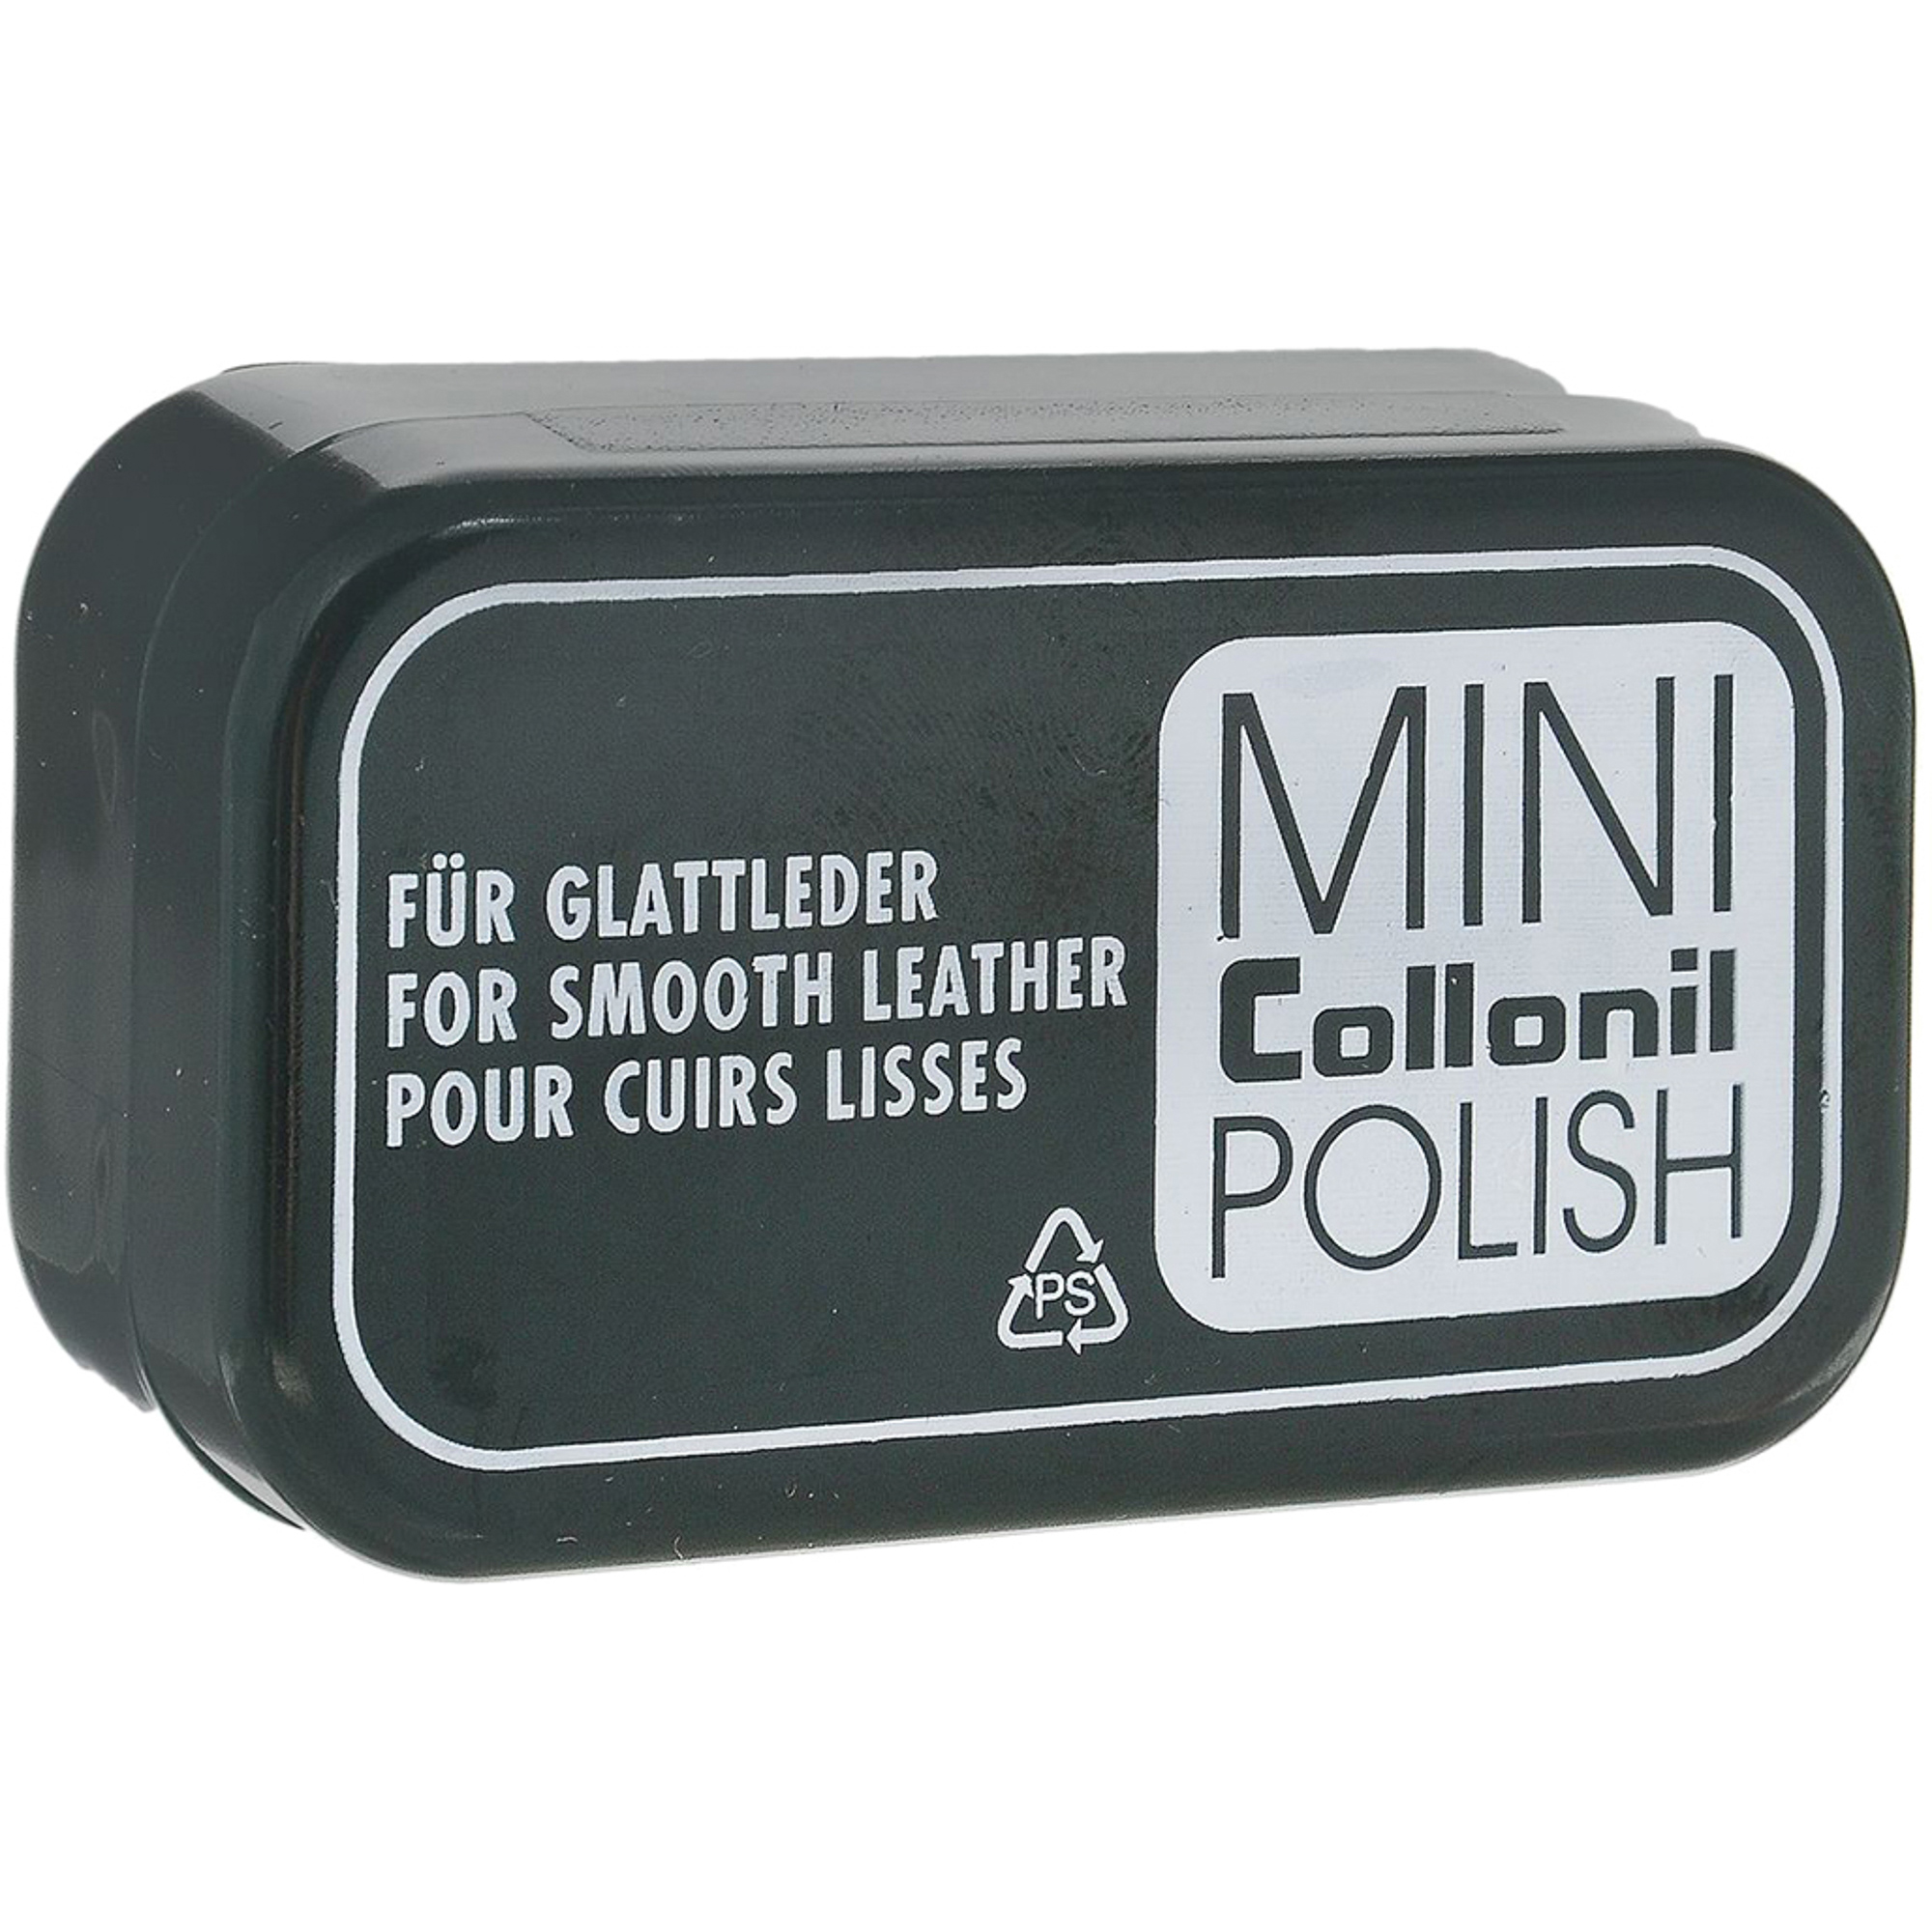 Губка для полировки Collonil Mini Polish губка для нанесения полировки на автомобиль 12×5 5×7 см без пропитки футляр